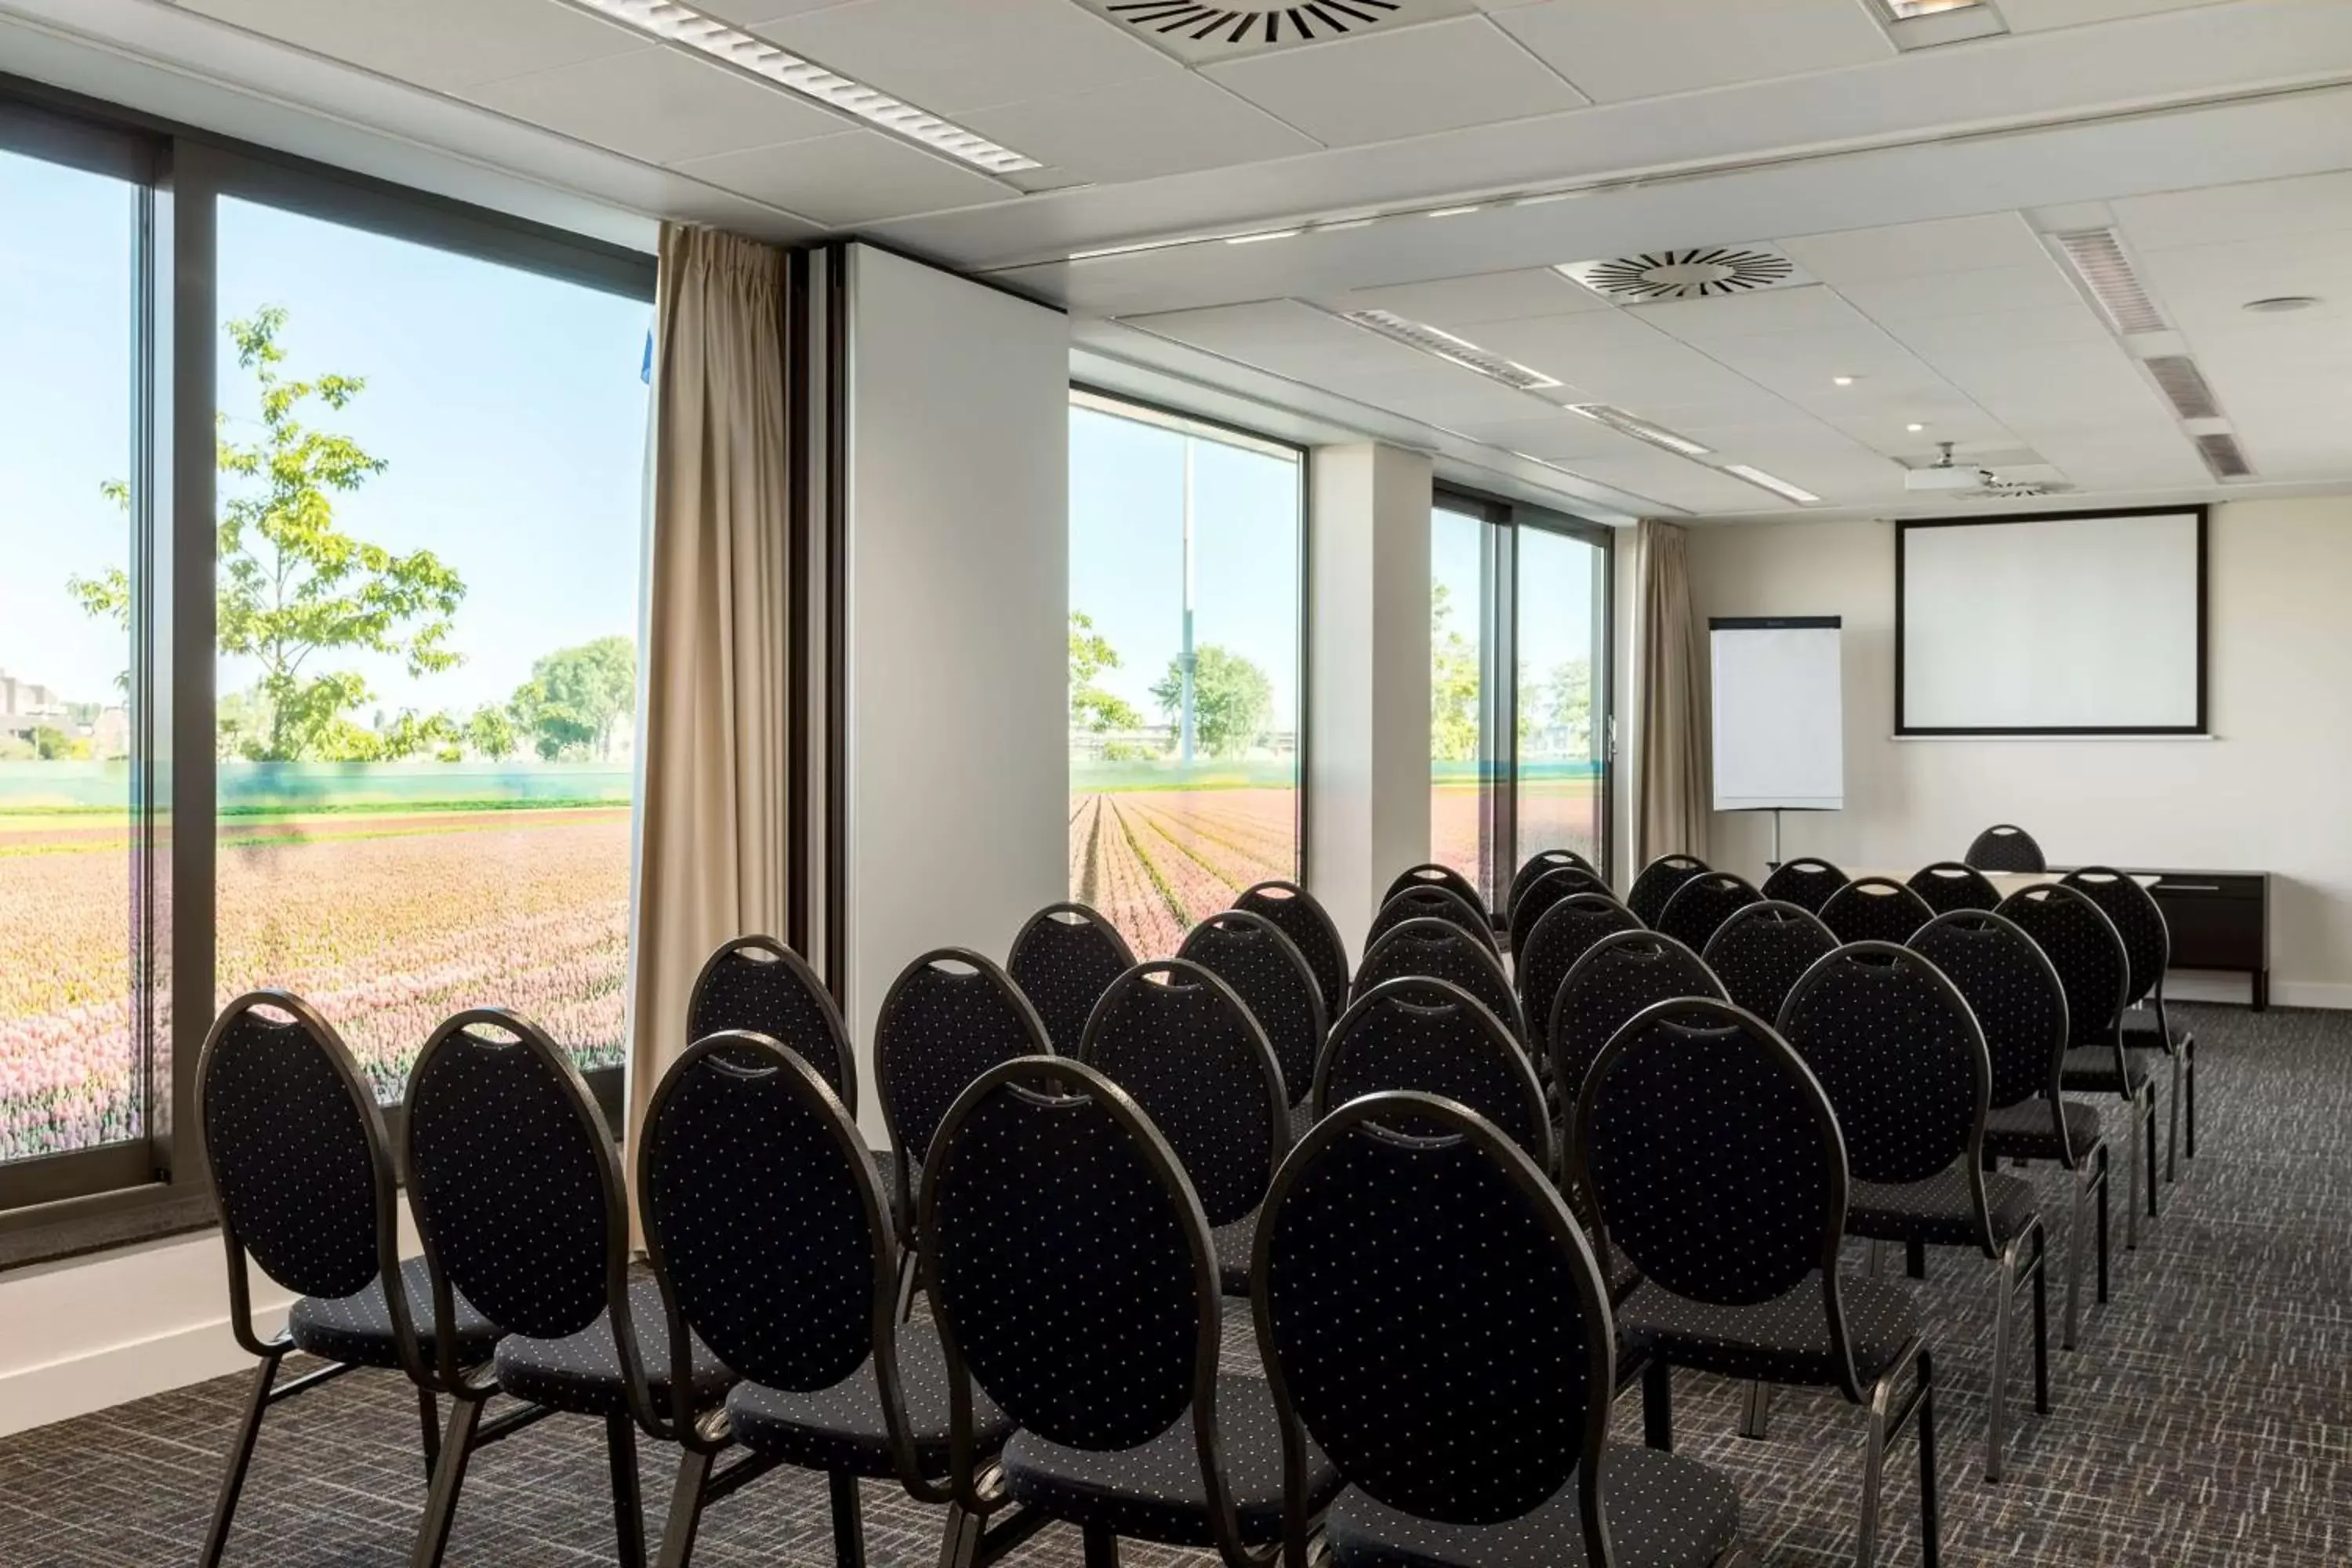 Meeting/conference room in Hilton Garden Inn Leiden